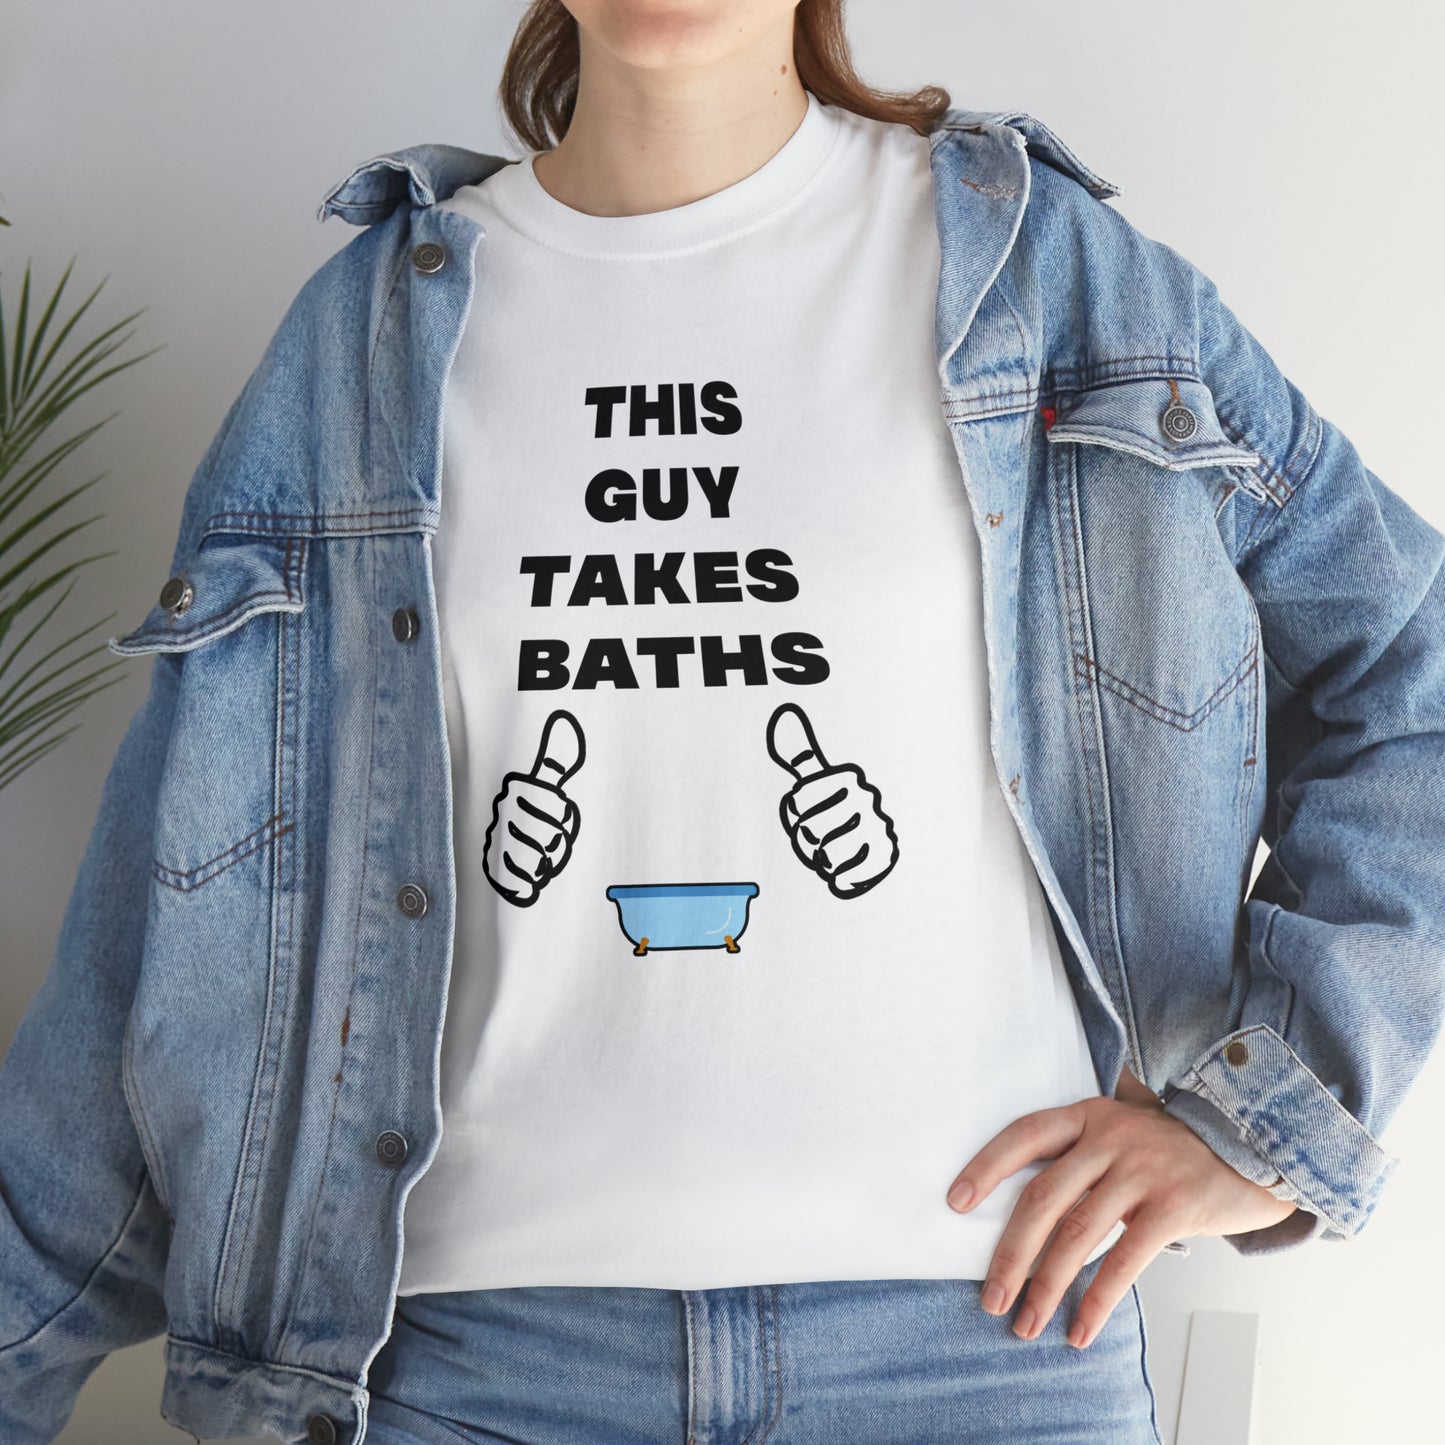 BATH TAKER T-SHIRT